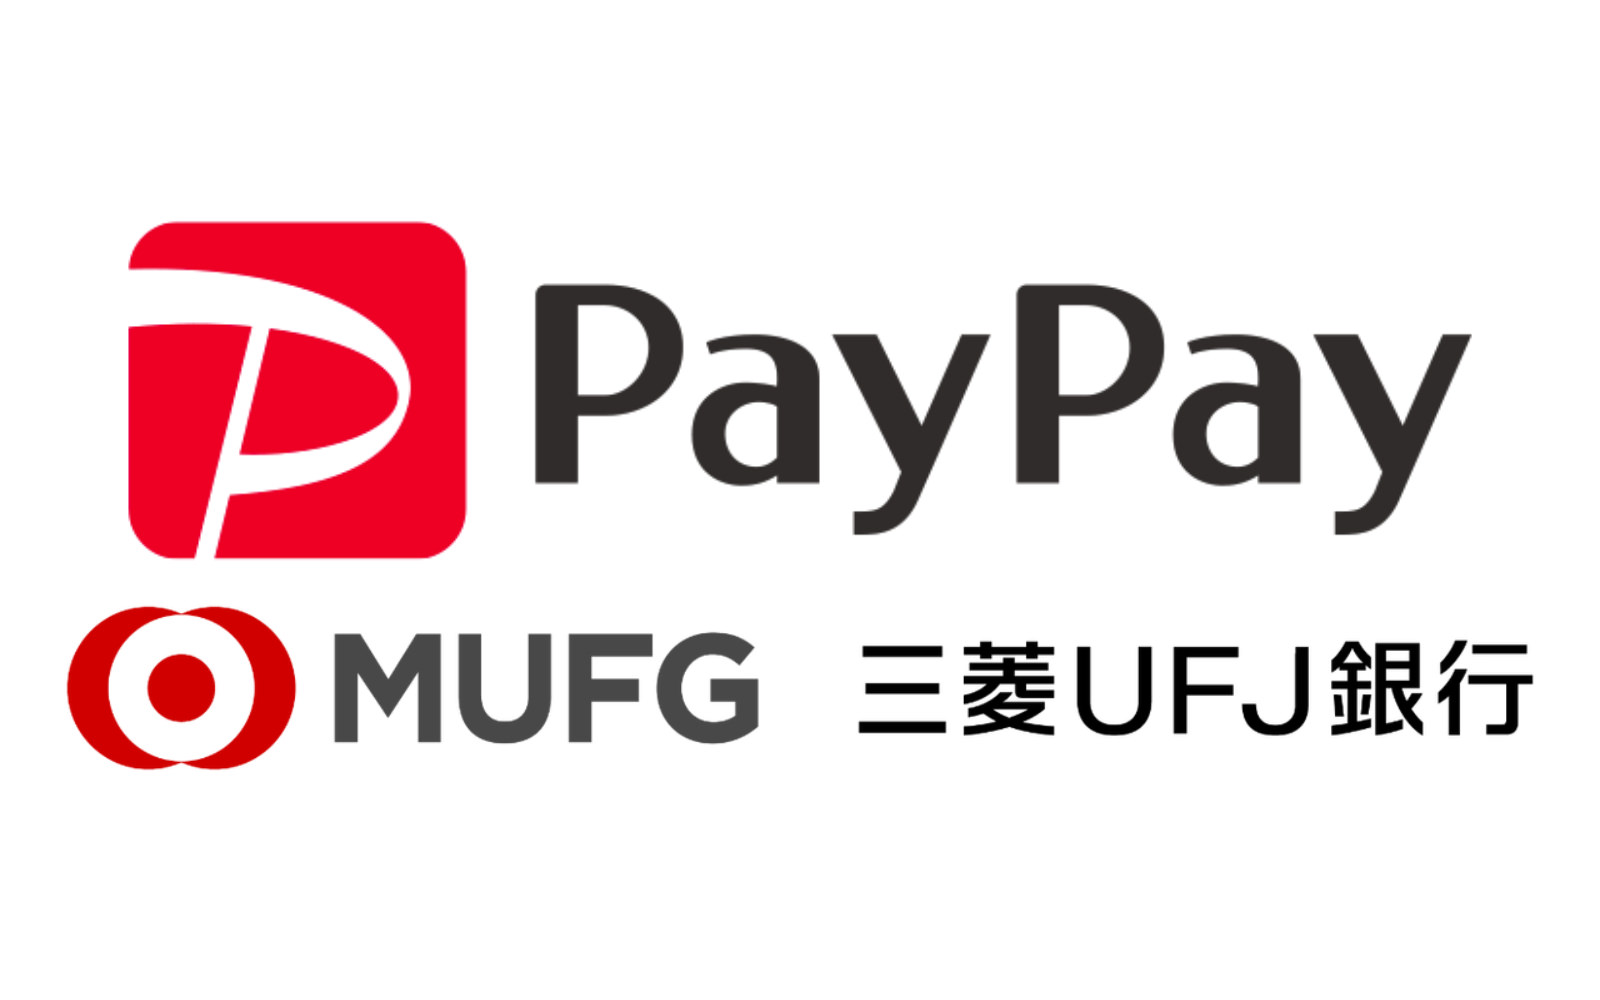 PayPay and UFJ